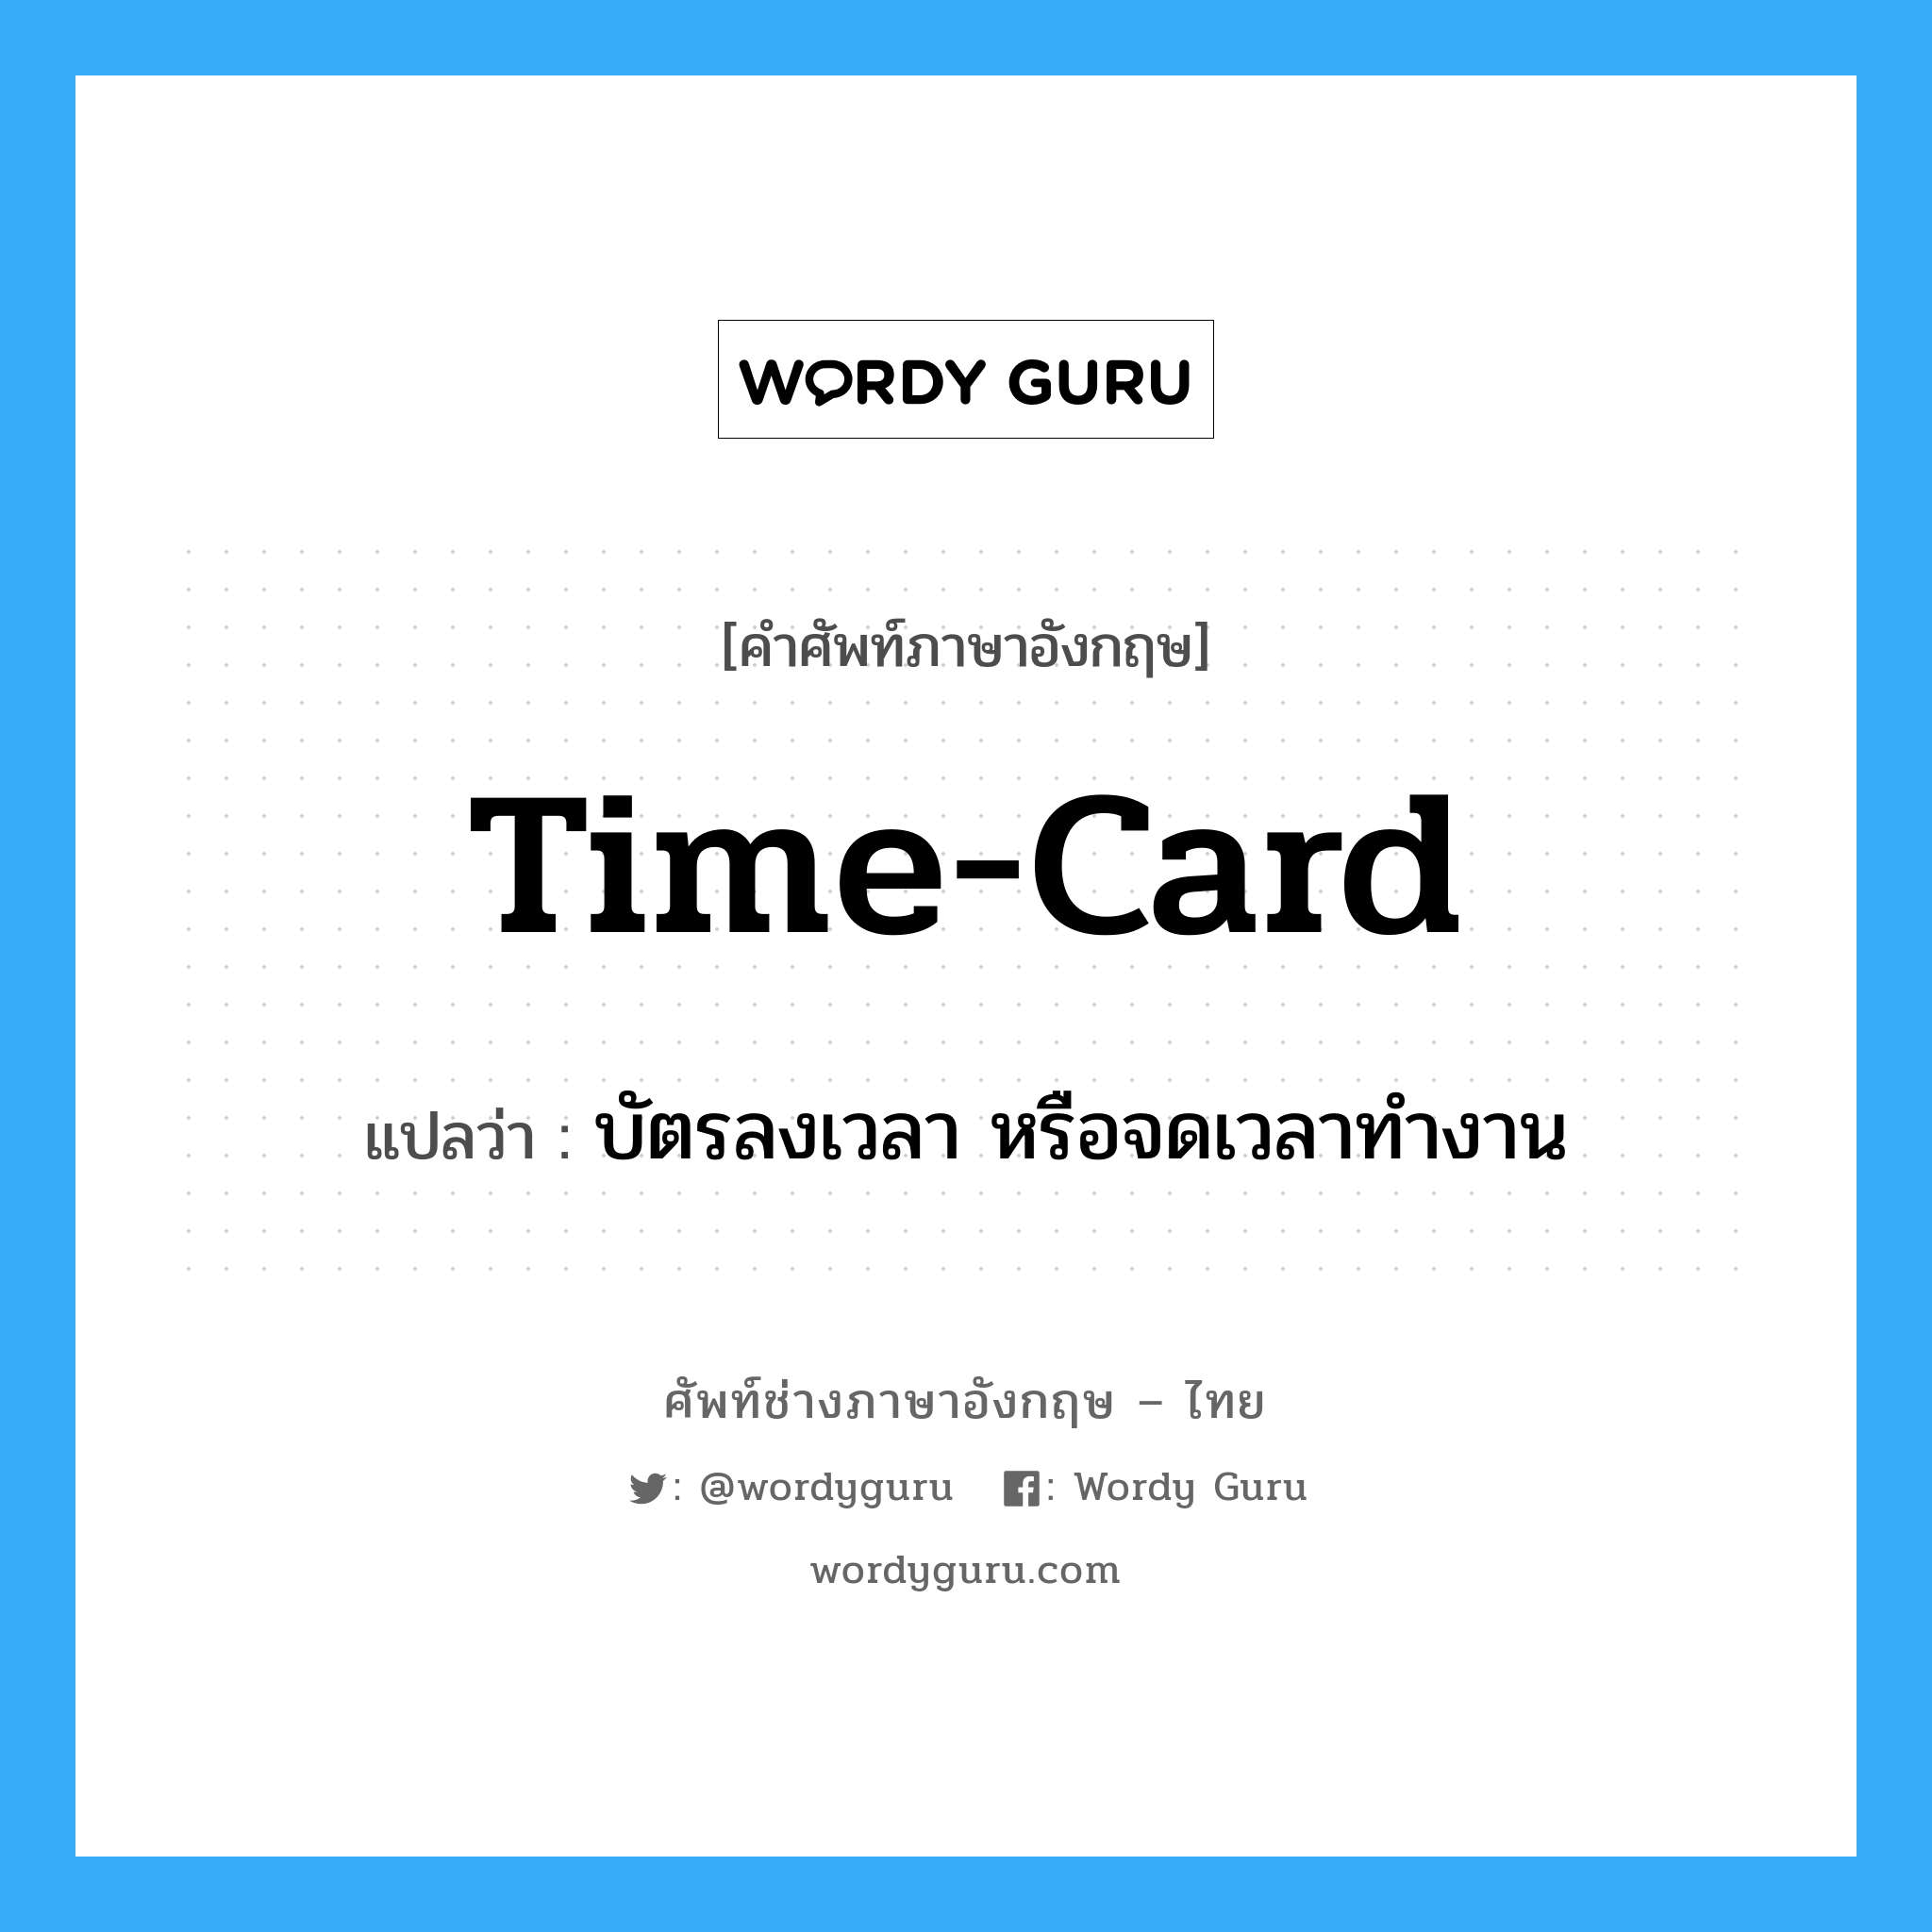 time-card แปลว่า?, คำศัพท์ช่างภาษาอังกฤษ - ไทย time-card คำศัพท์ภาษาอังกฤษ time-card แปลว่า บัตรลงเวลา หรือจดเวลาทำงาน